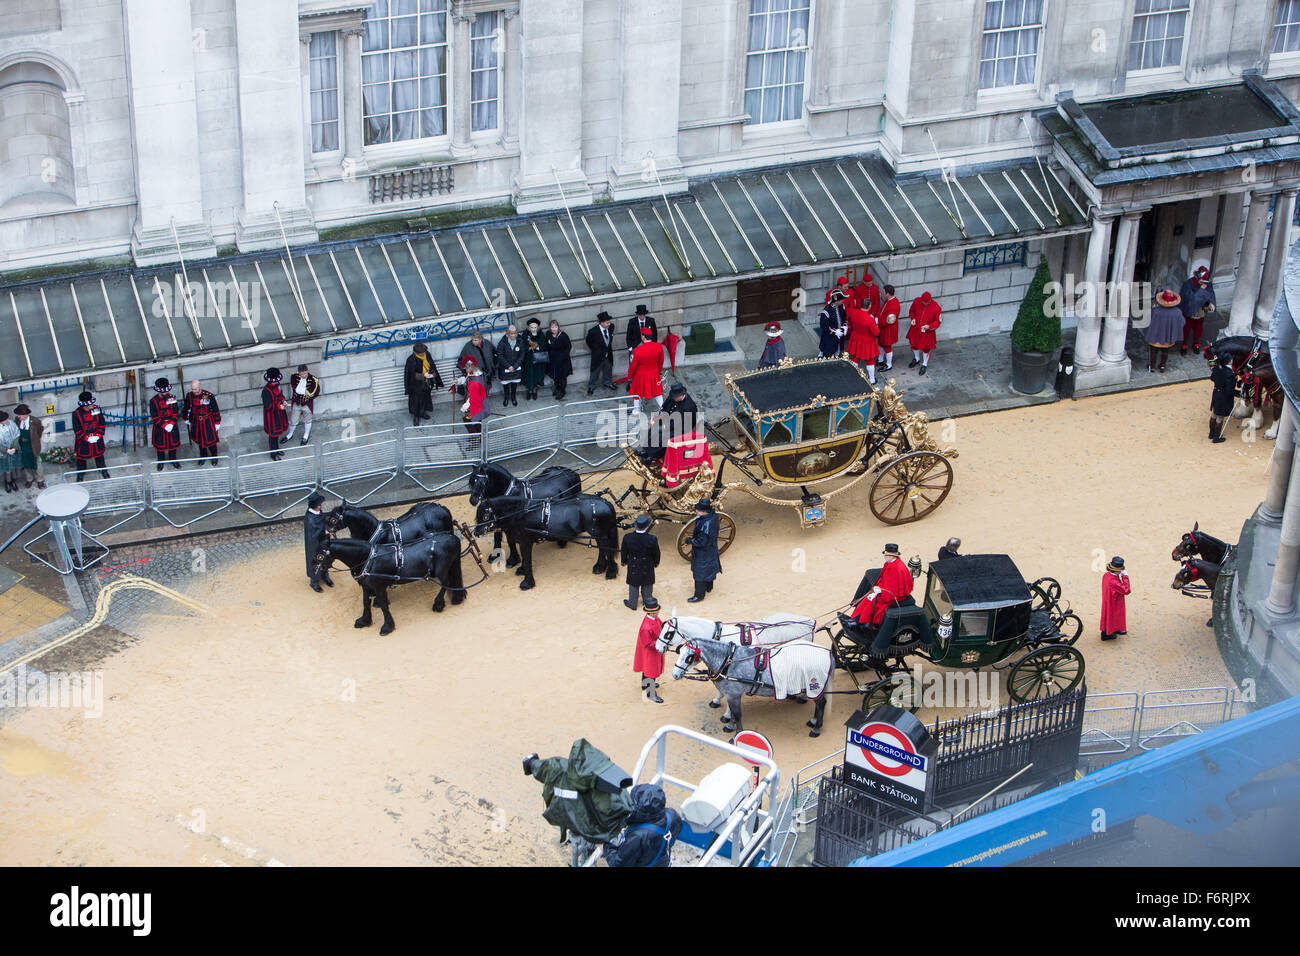 Il signore sindaco di mostrare sfila per le strade della città di Londra in seguito a una tradizione che dura da 800 anni. Foto Stock